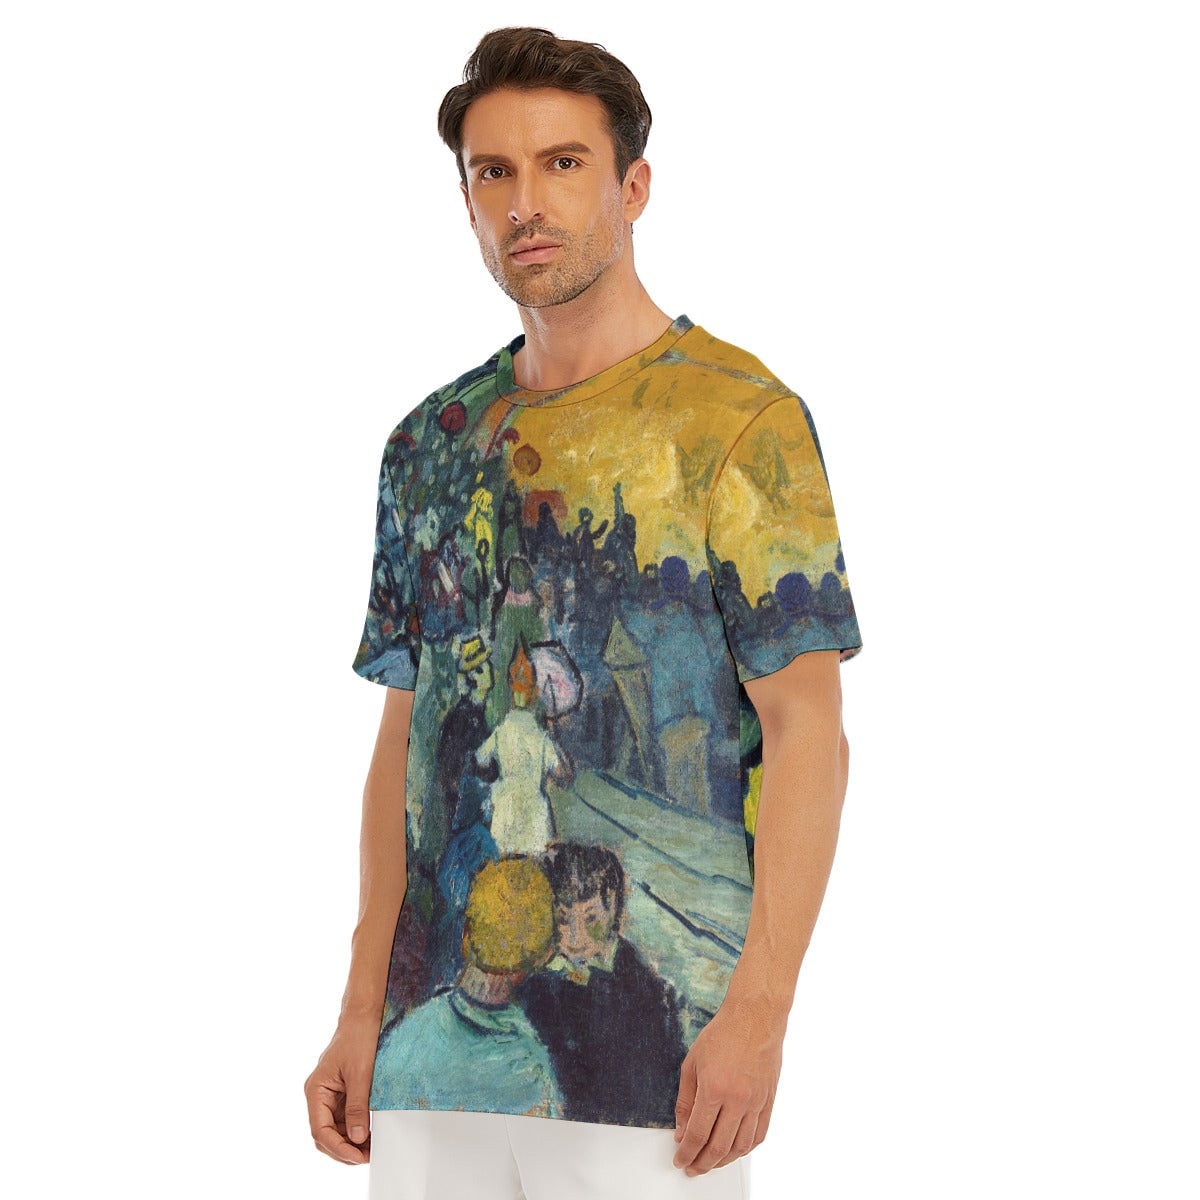 Vincent van Gogh’s Les Arenes T-Shirt